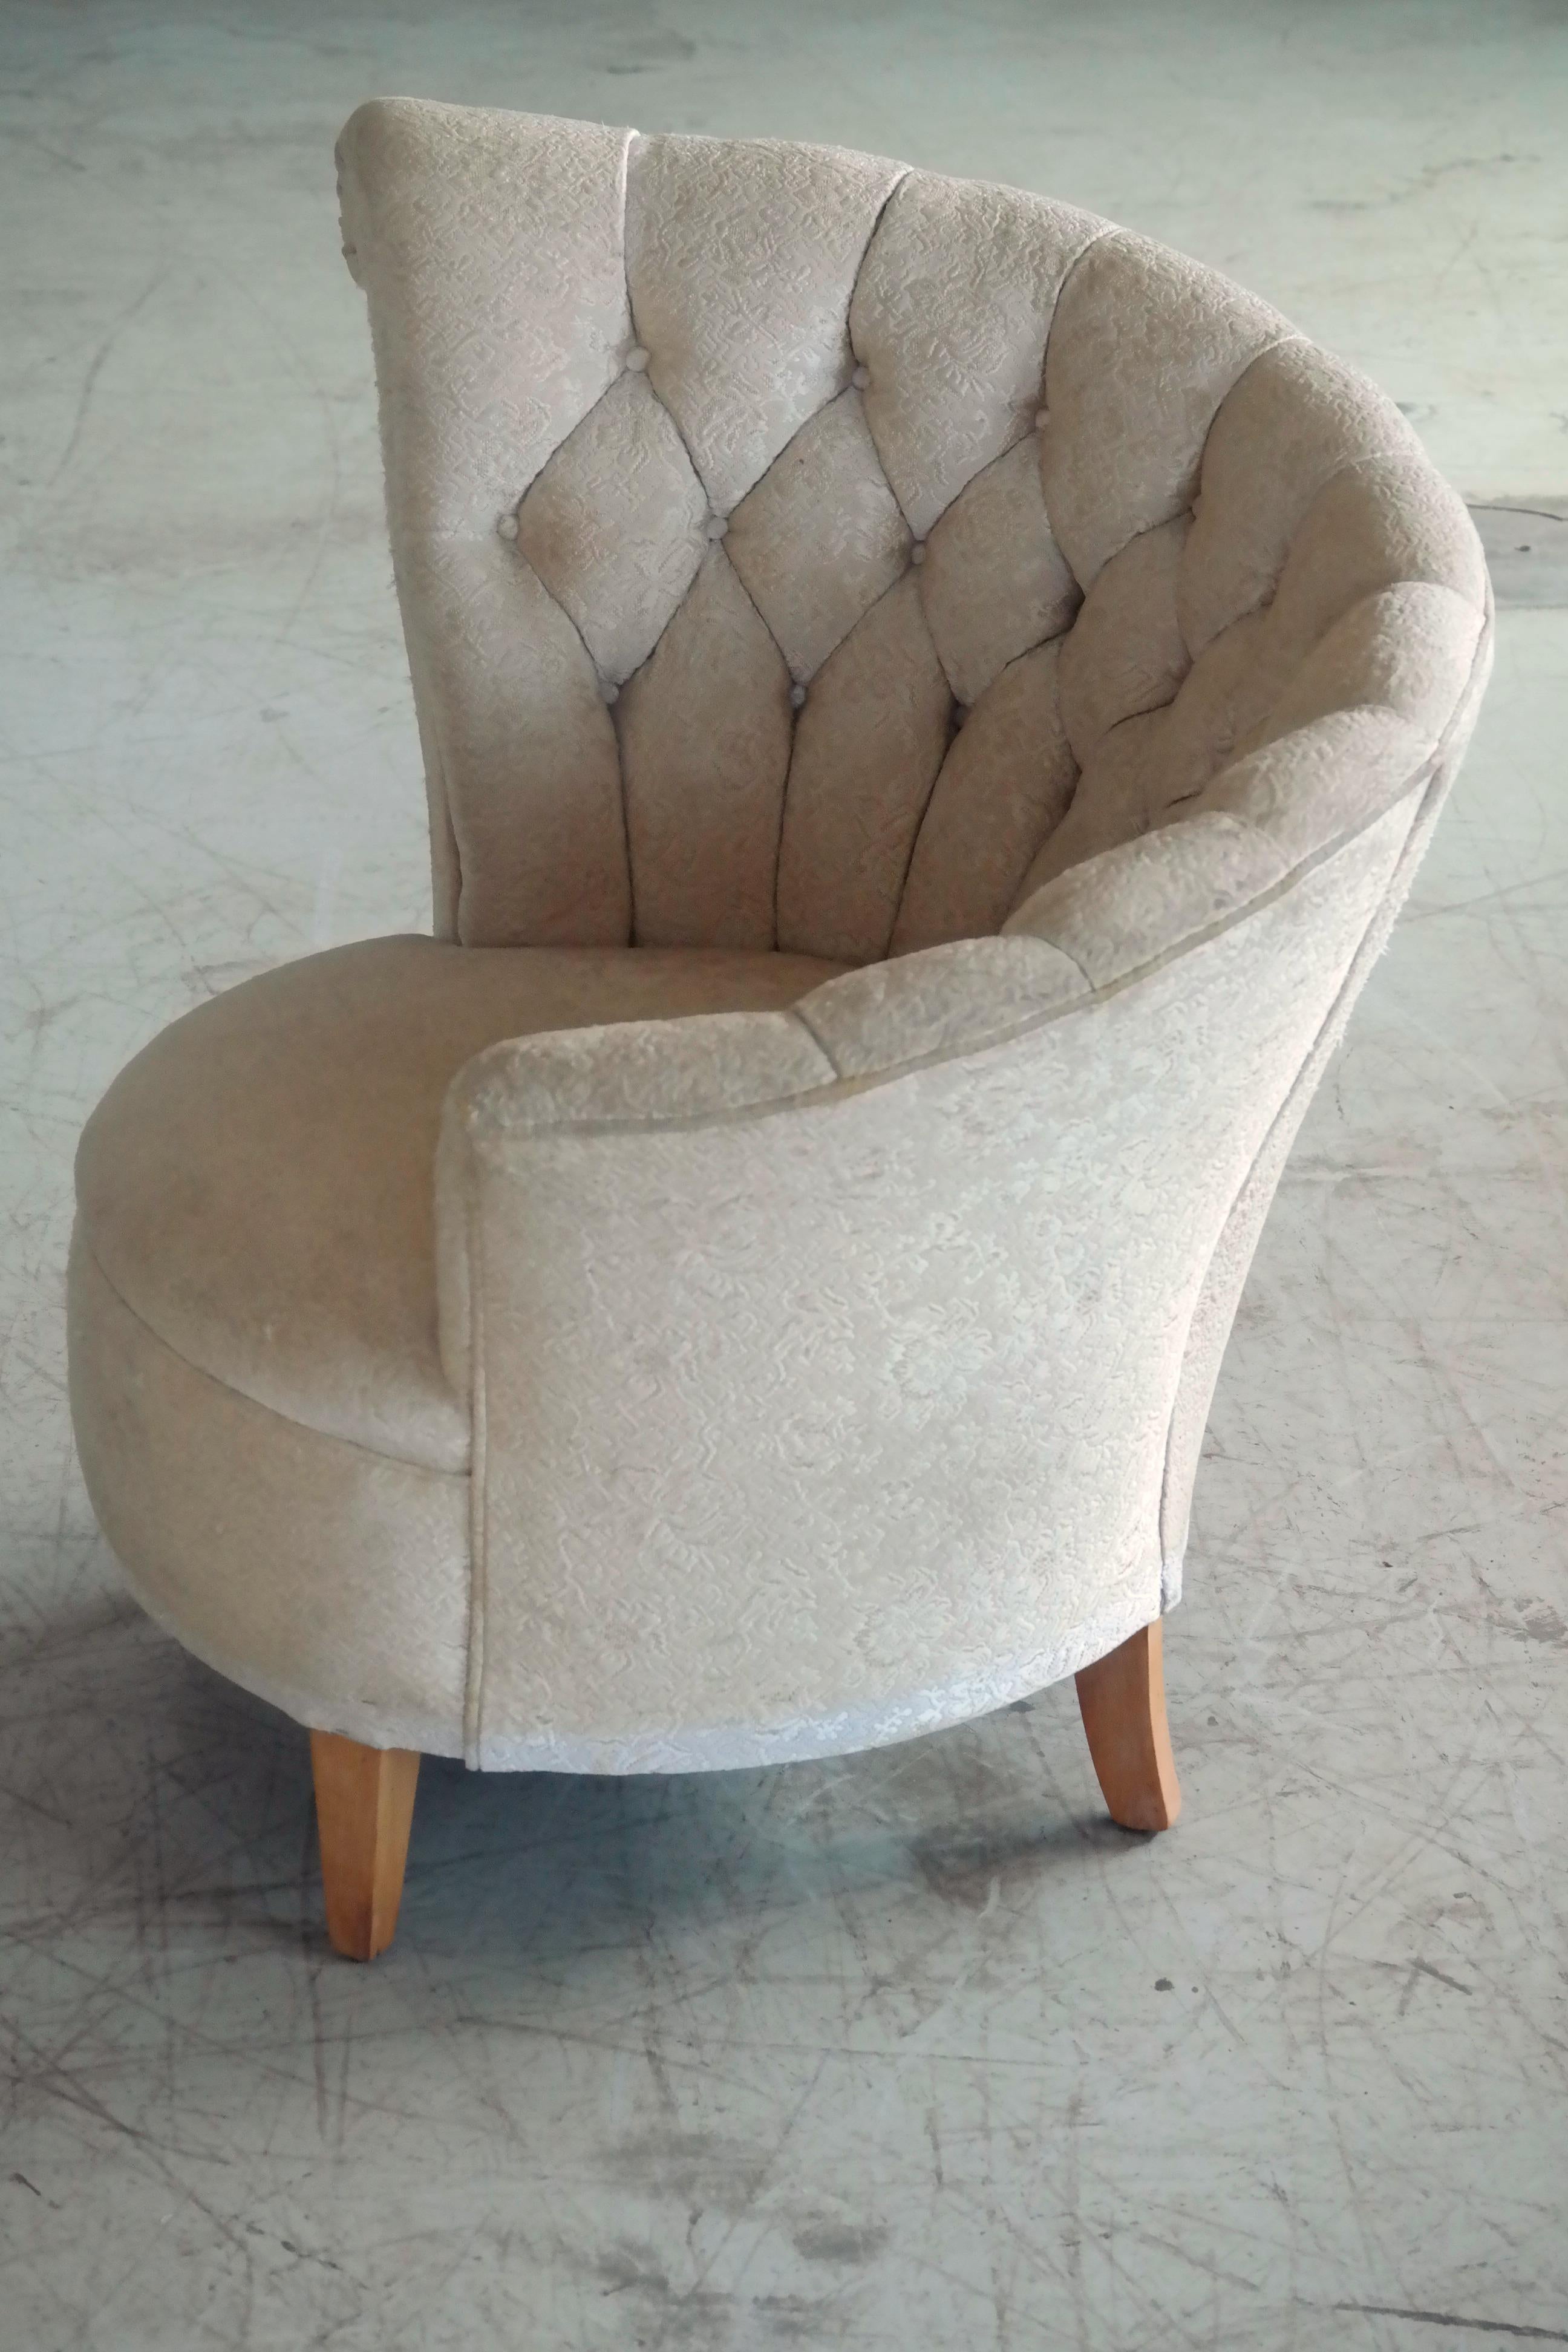 asymmetric chair